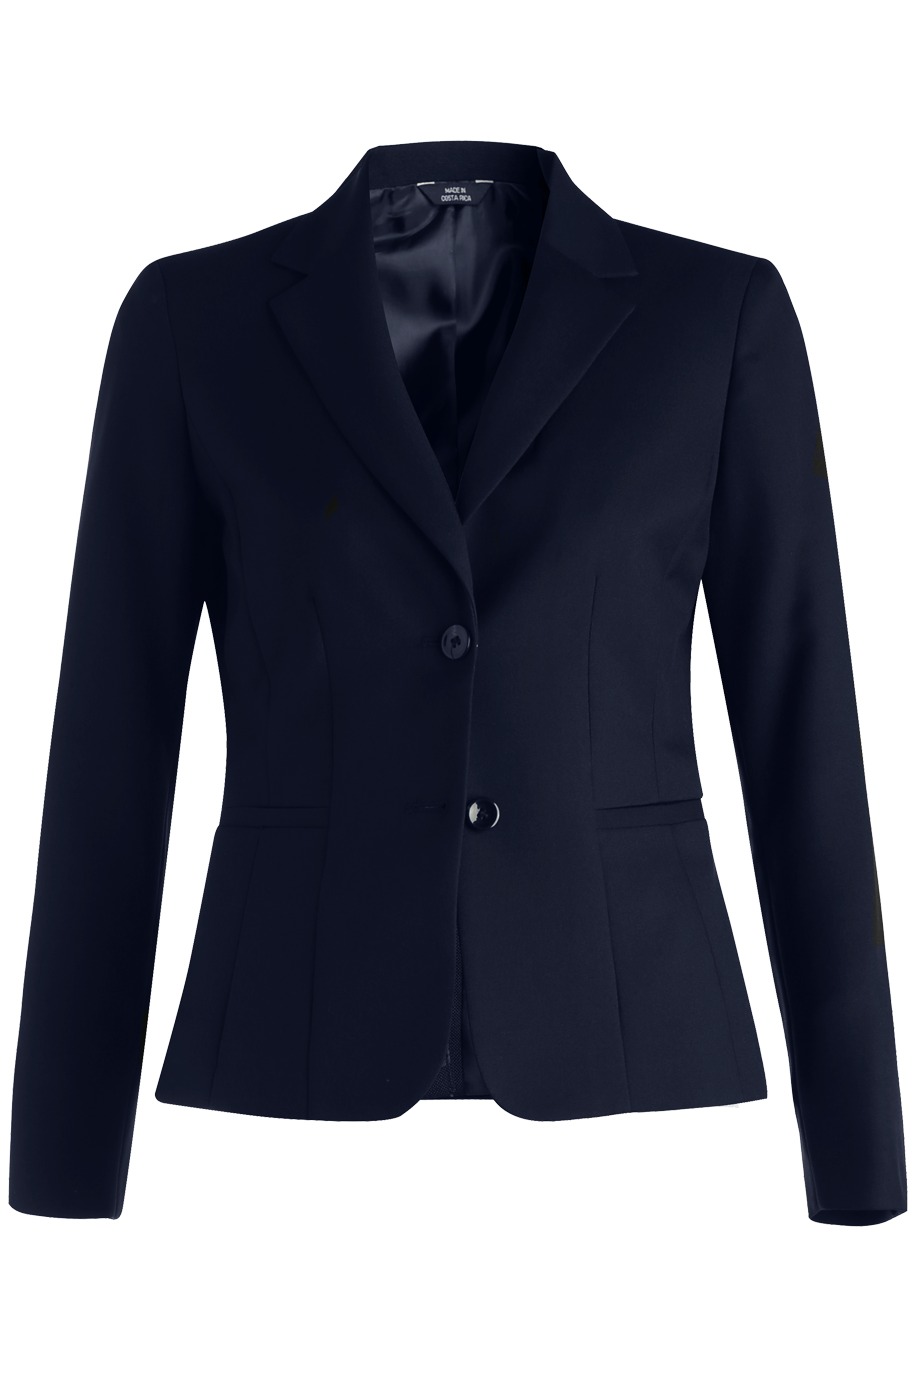 Edwards Garment 6525 - Synergy Washable Suit Coat